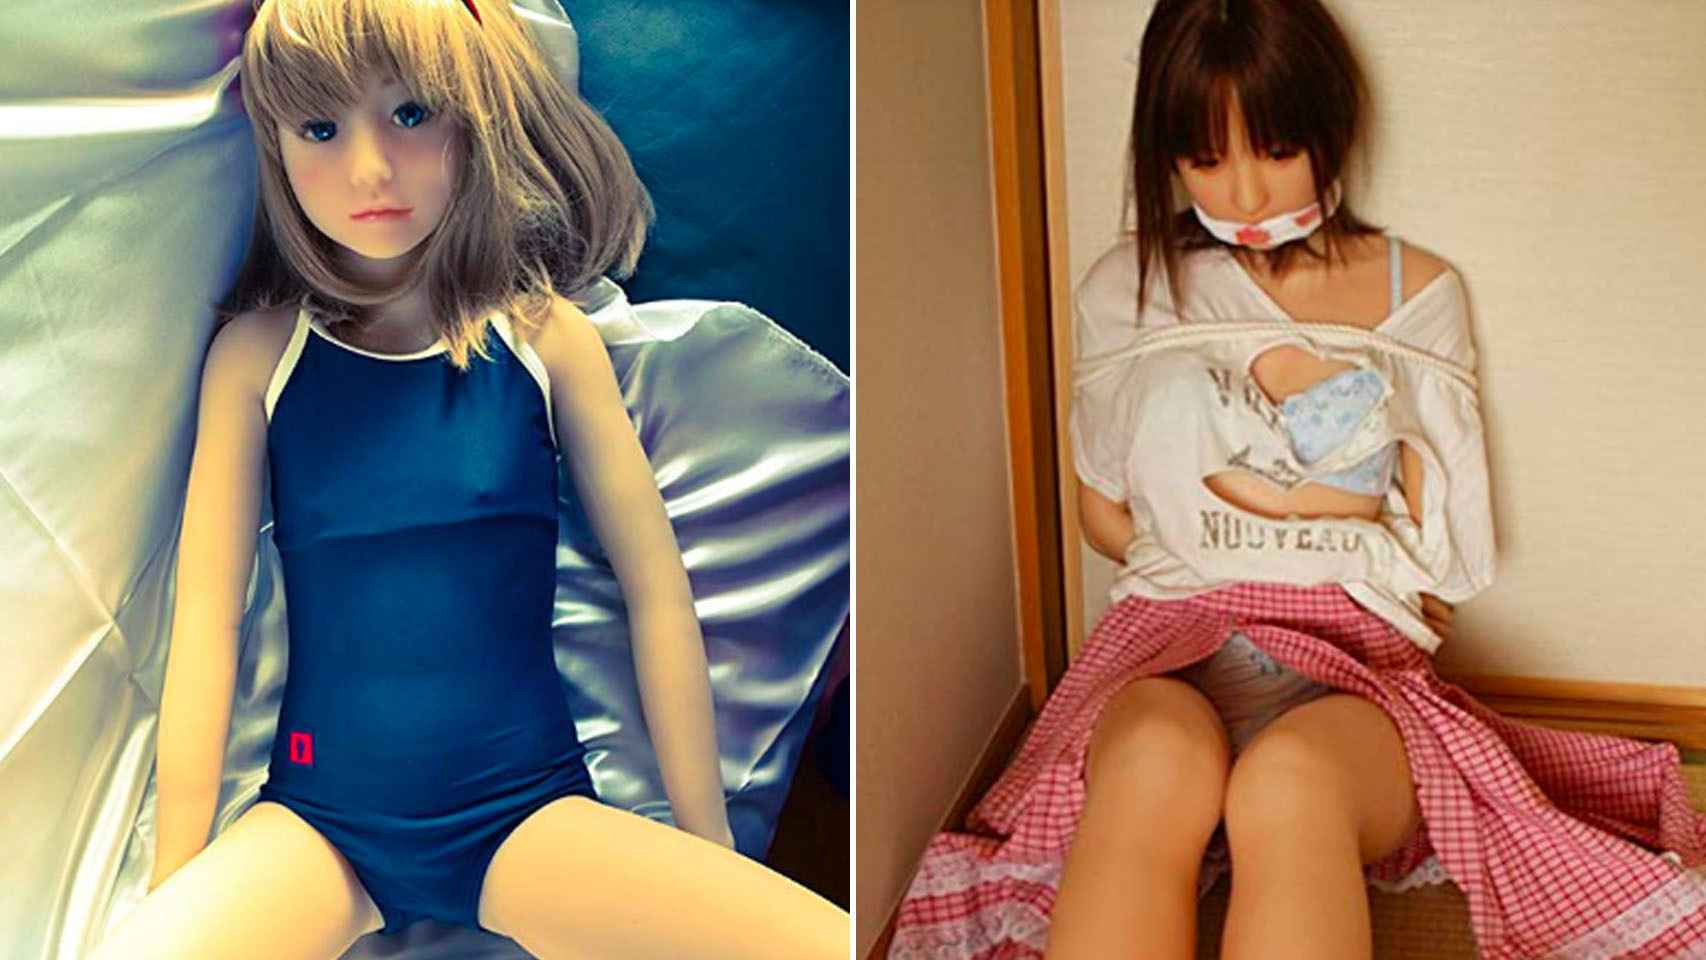 Las muñecas sexuales infantiles para pedófilos se cuelan en EEUU a